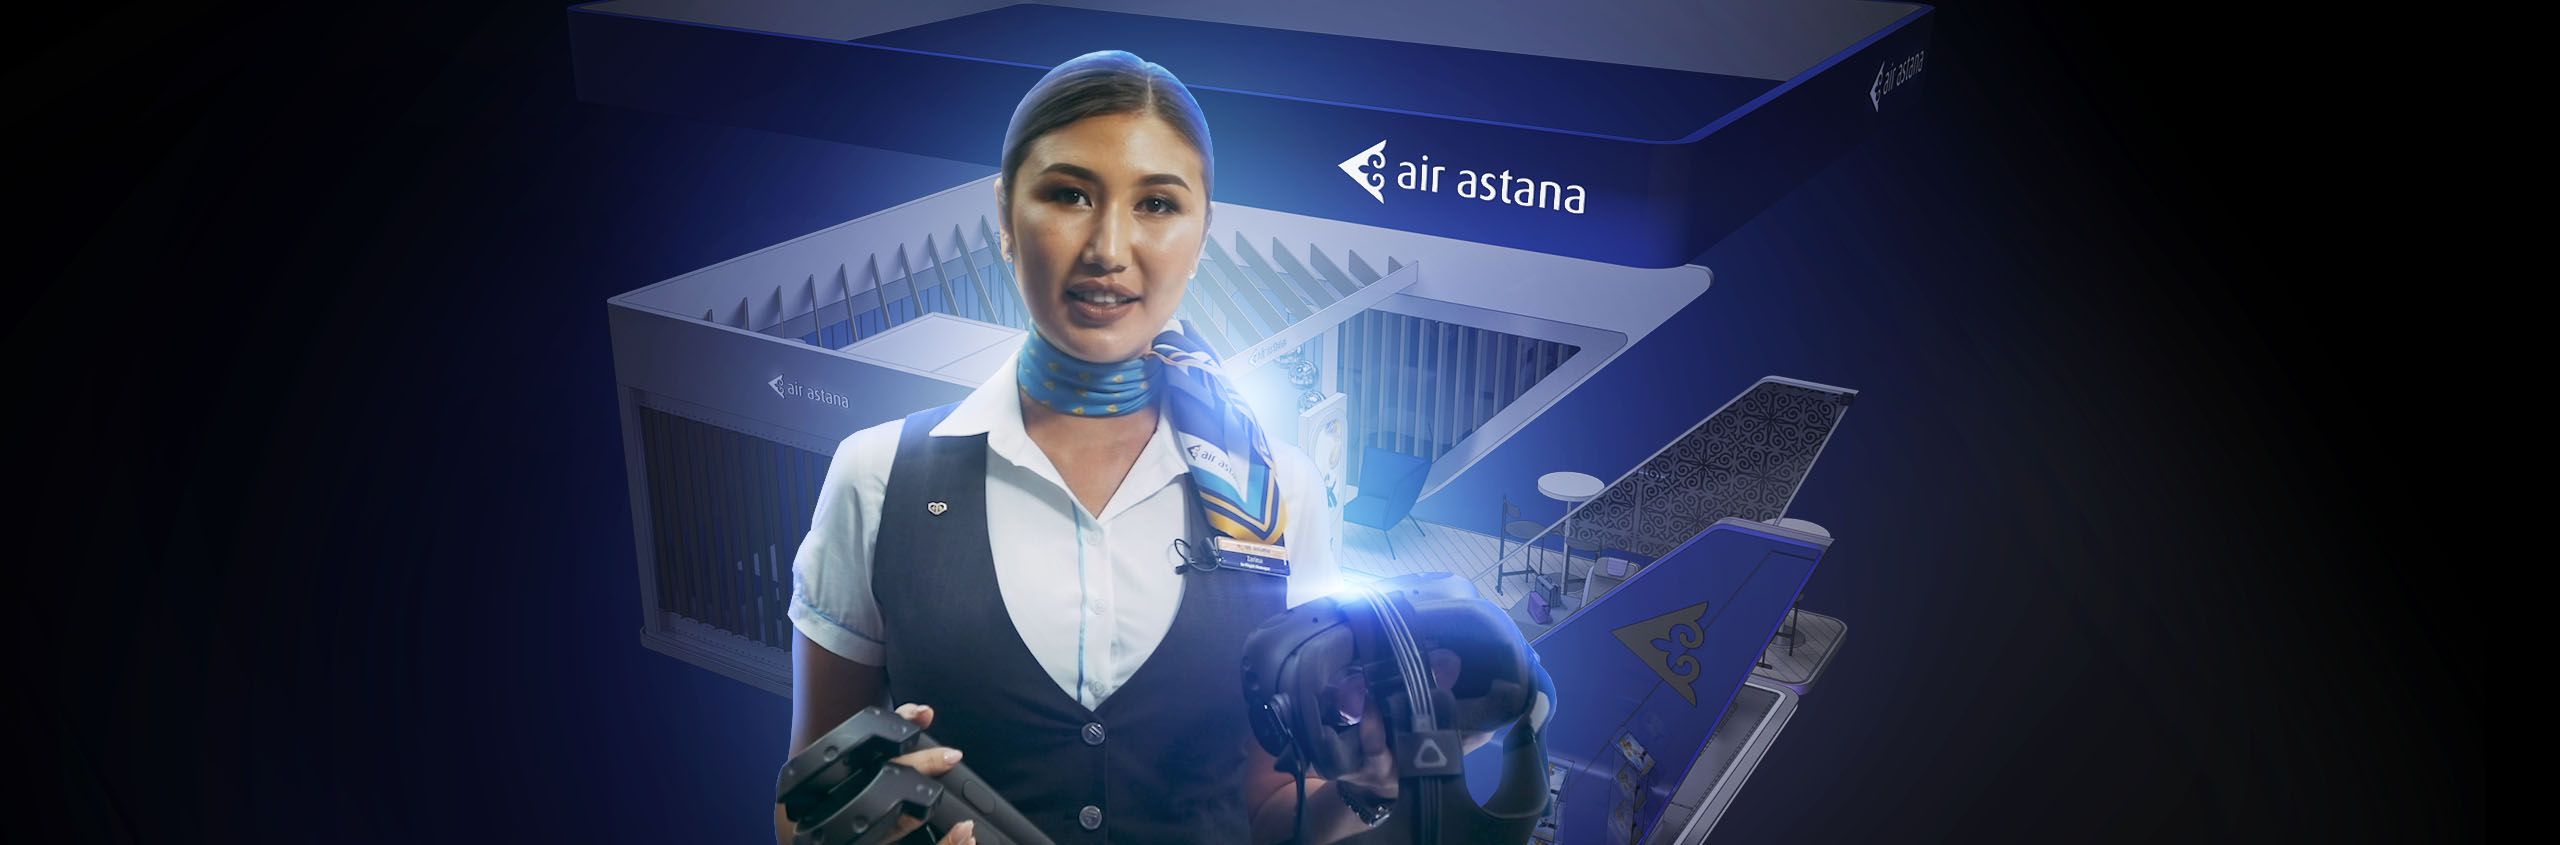 Air Astana - Выставочный стенд